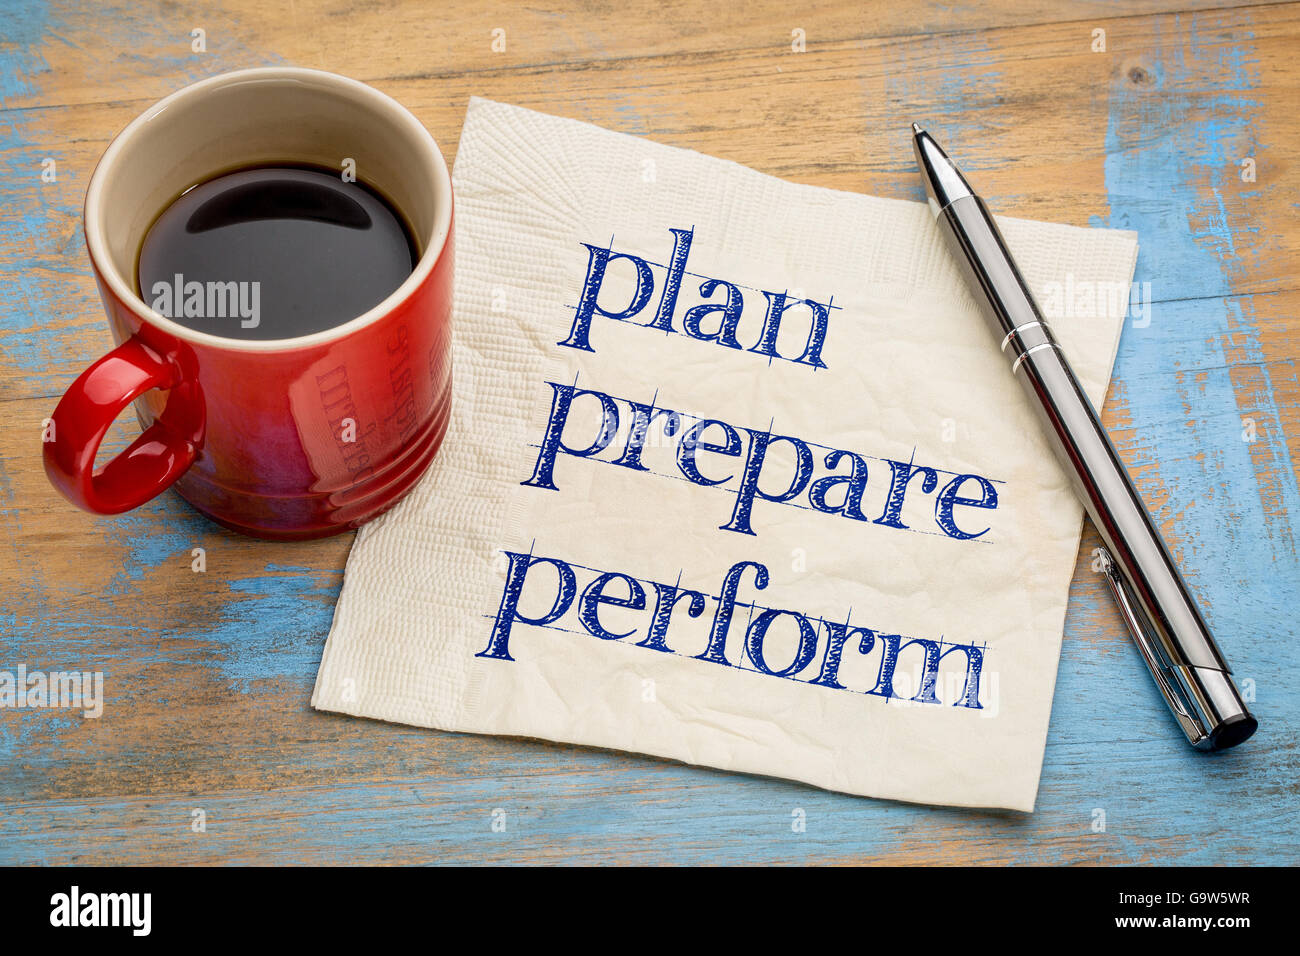 Planifier, préparer, effectuer l'écriture - sur une serviette avec une tasse de café expresso Banque D'Images